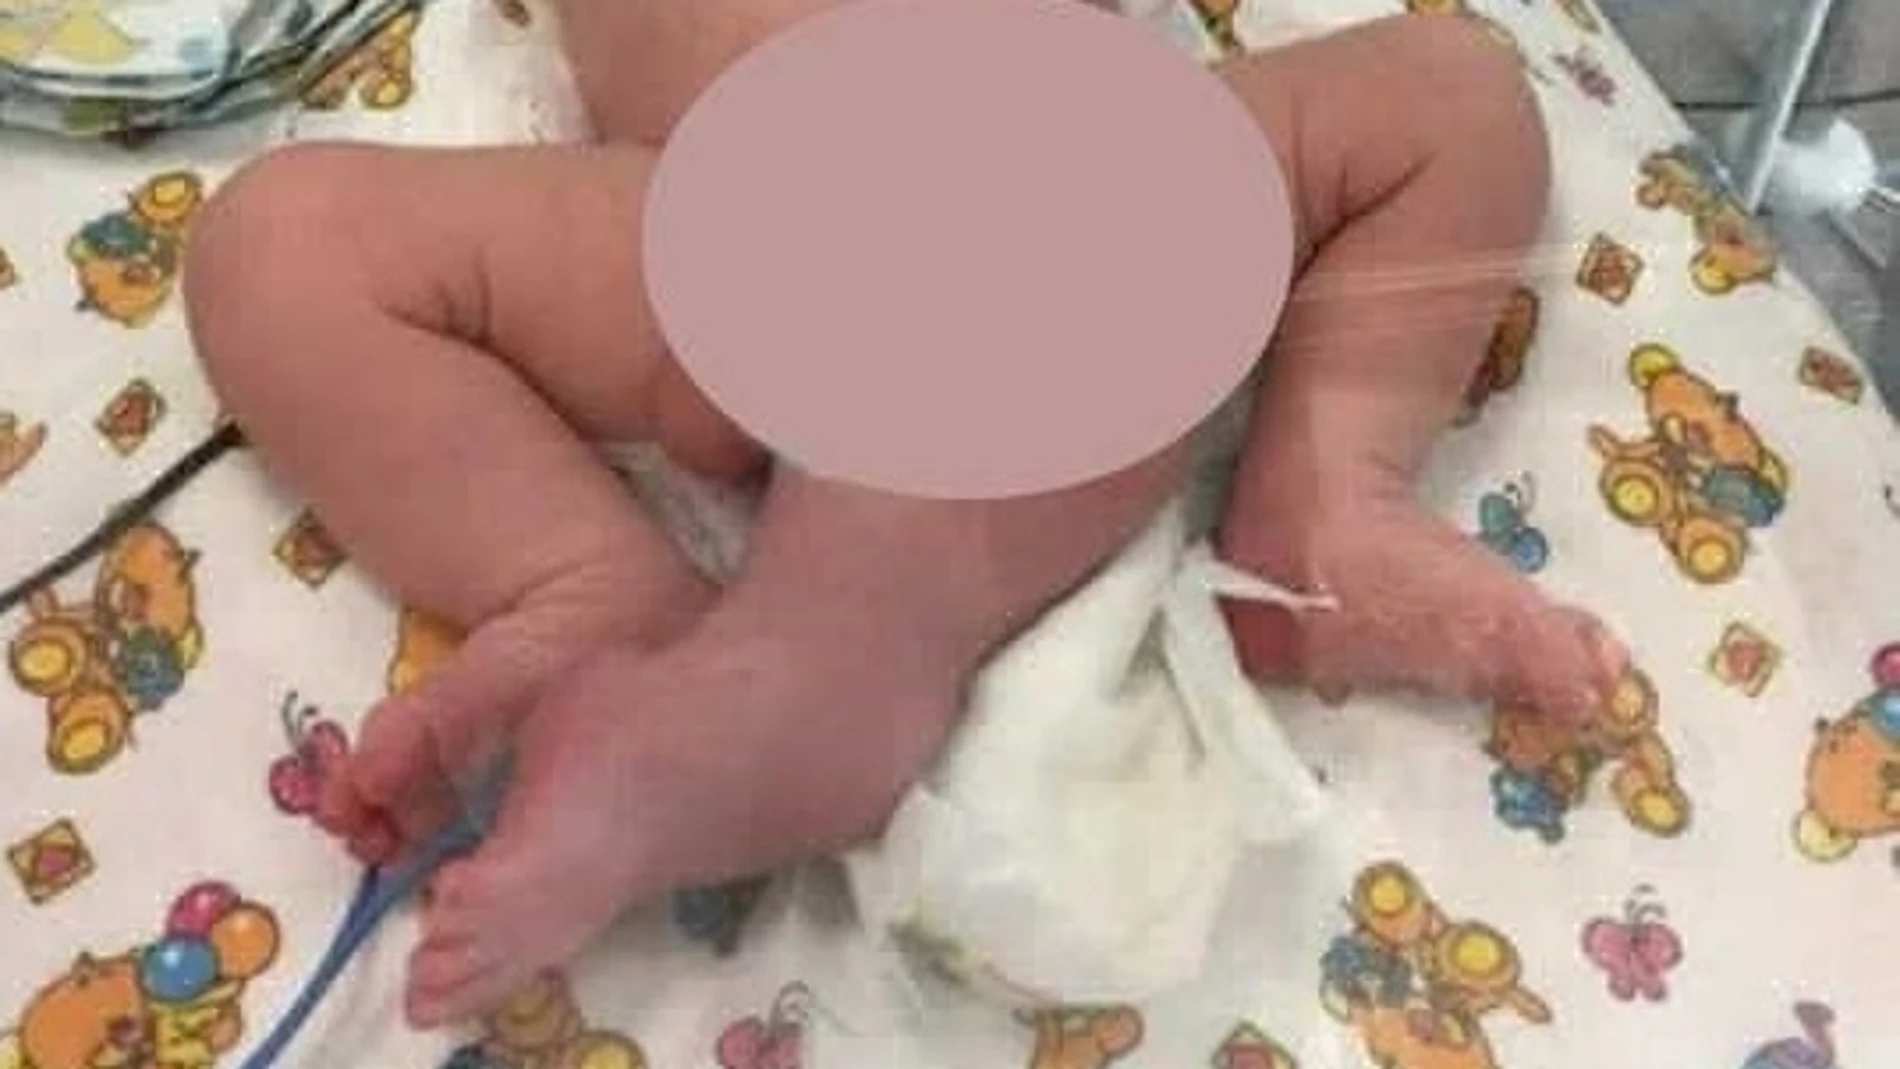 Imagen del bebé que nació con tres piernas en Rusia